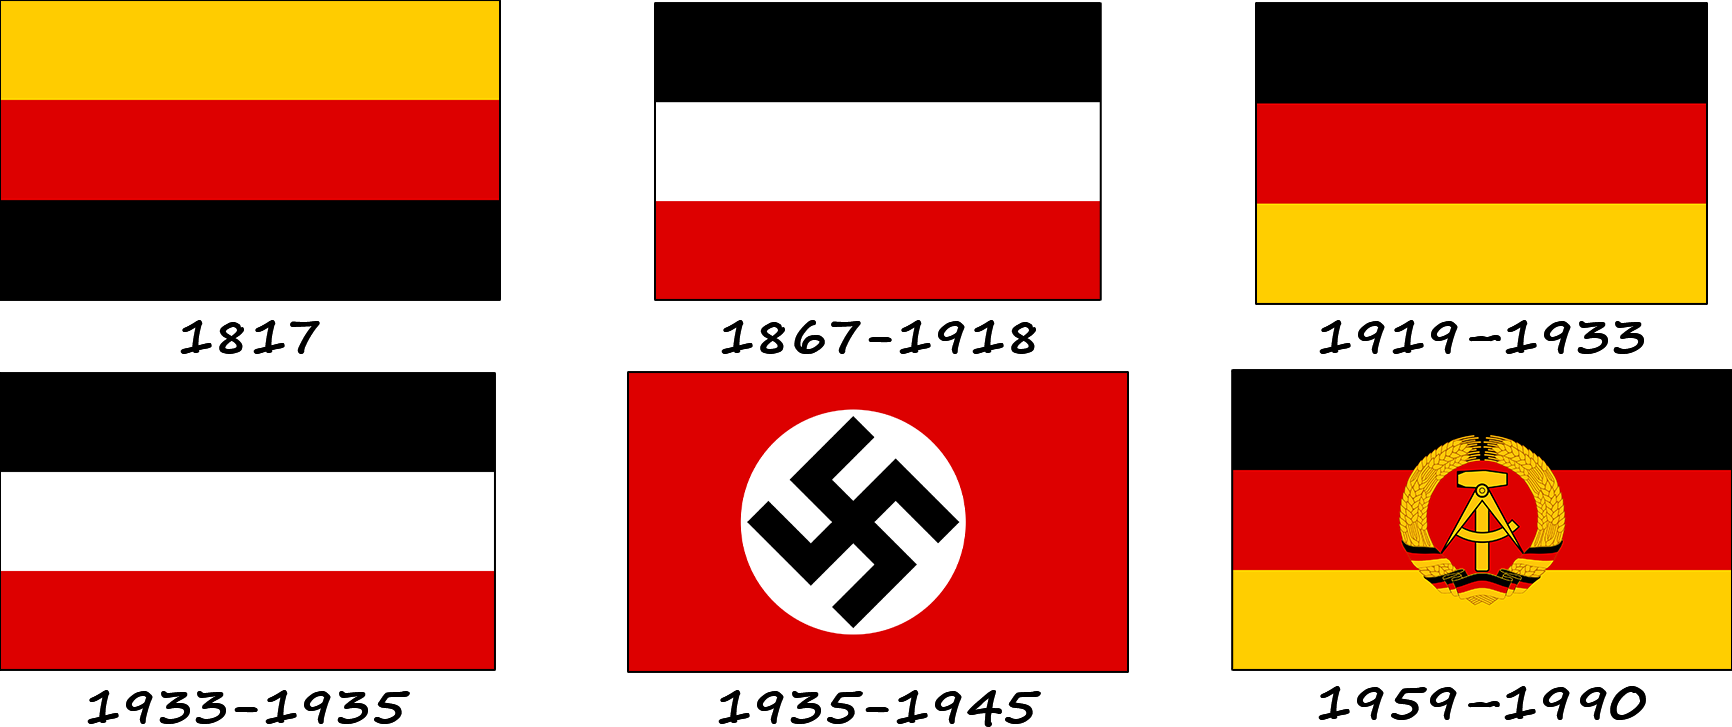 Historia de la bandera alemana